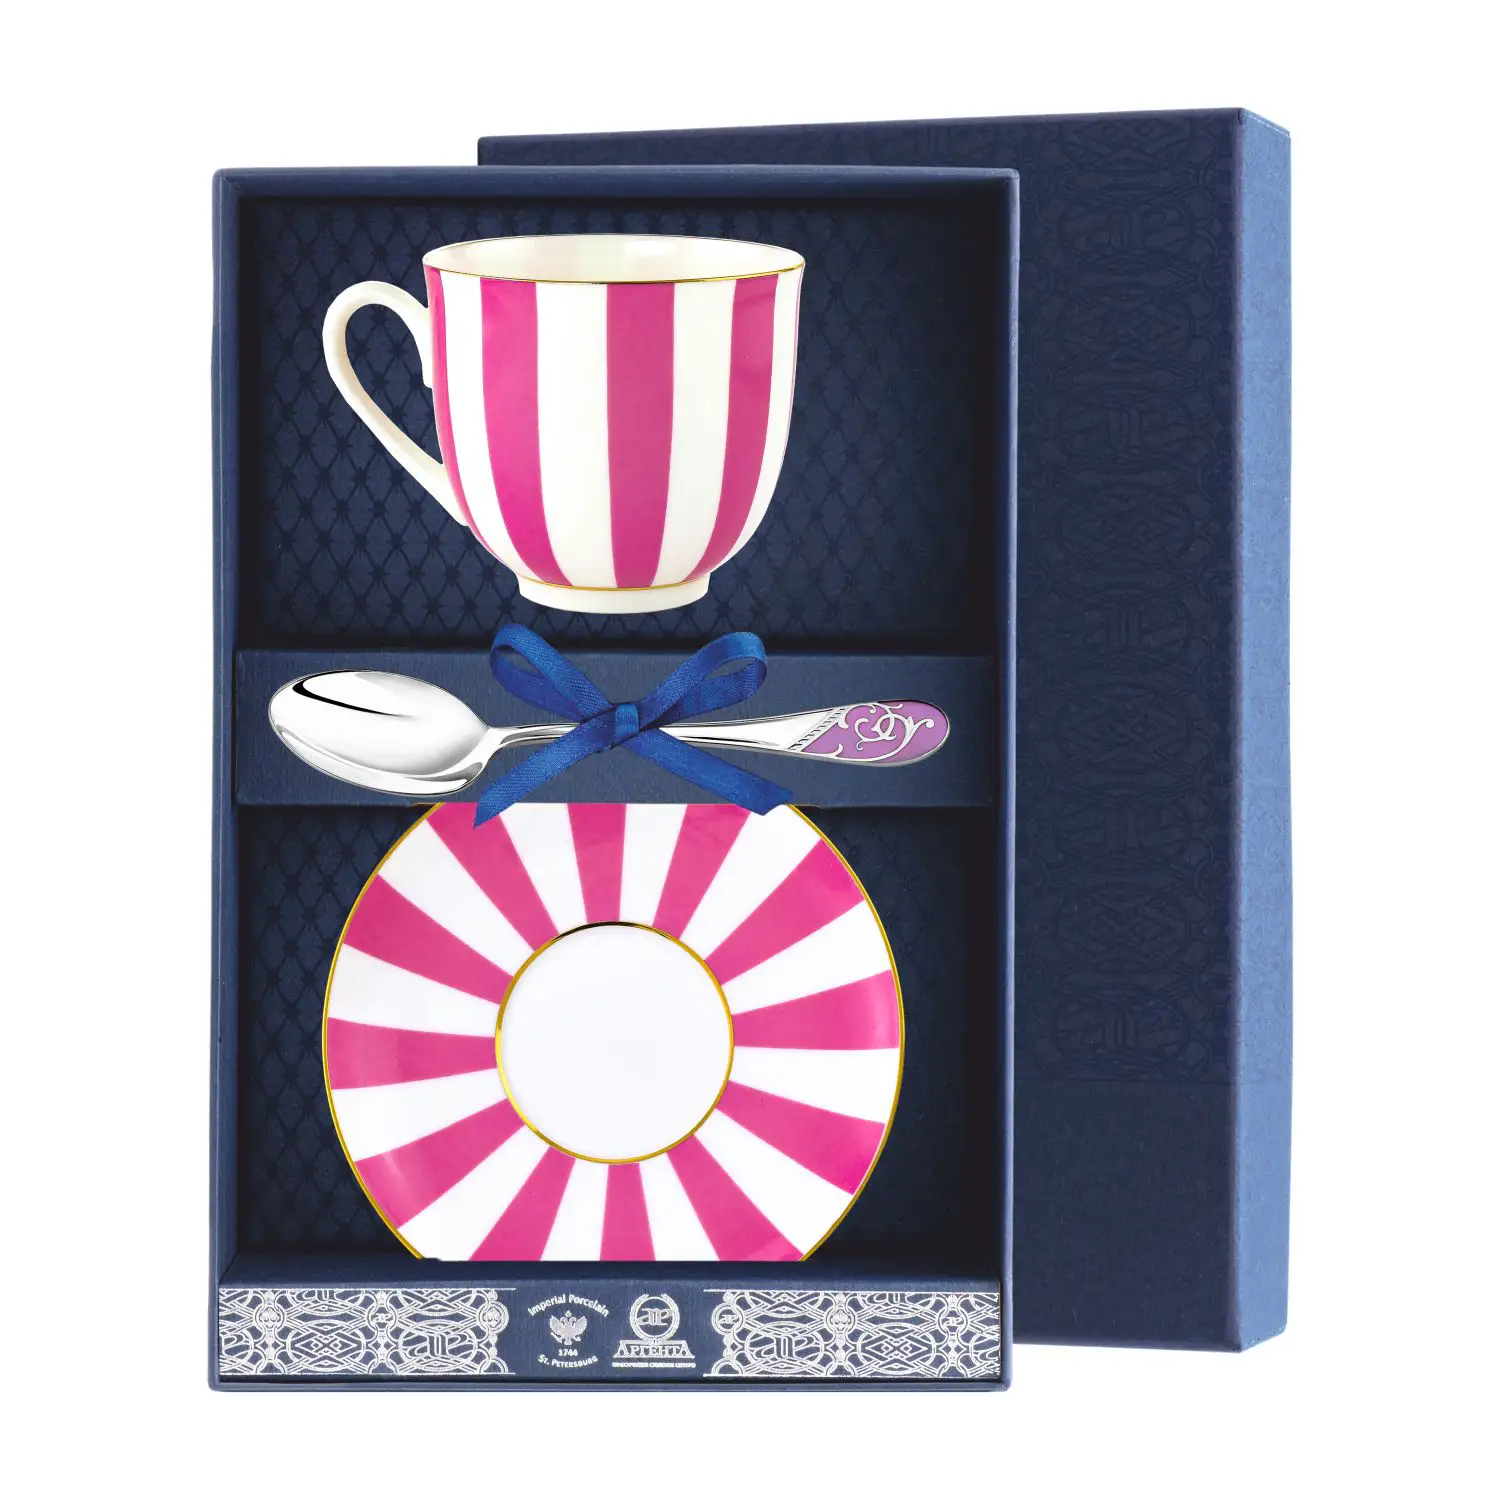 Набор чайный Ландыш - Да и Нет: блюдце, ложка, чашка (Серебро 925) набор чайный ландыш фигурное катание блюдце ложка чашка серебро 925